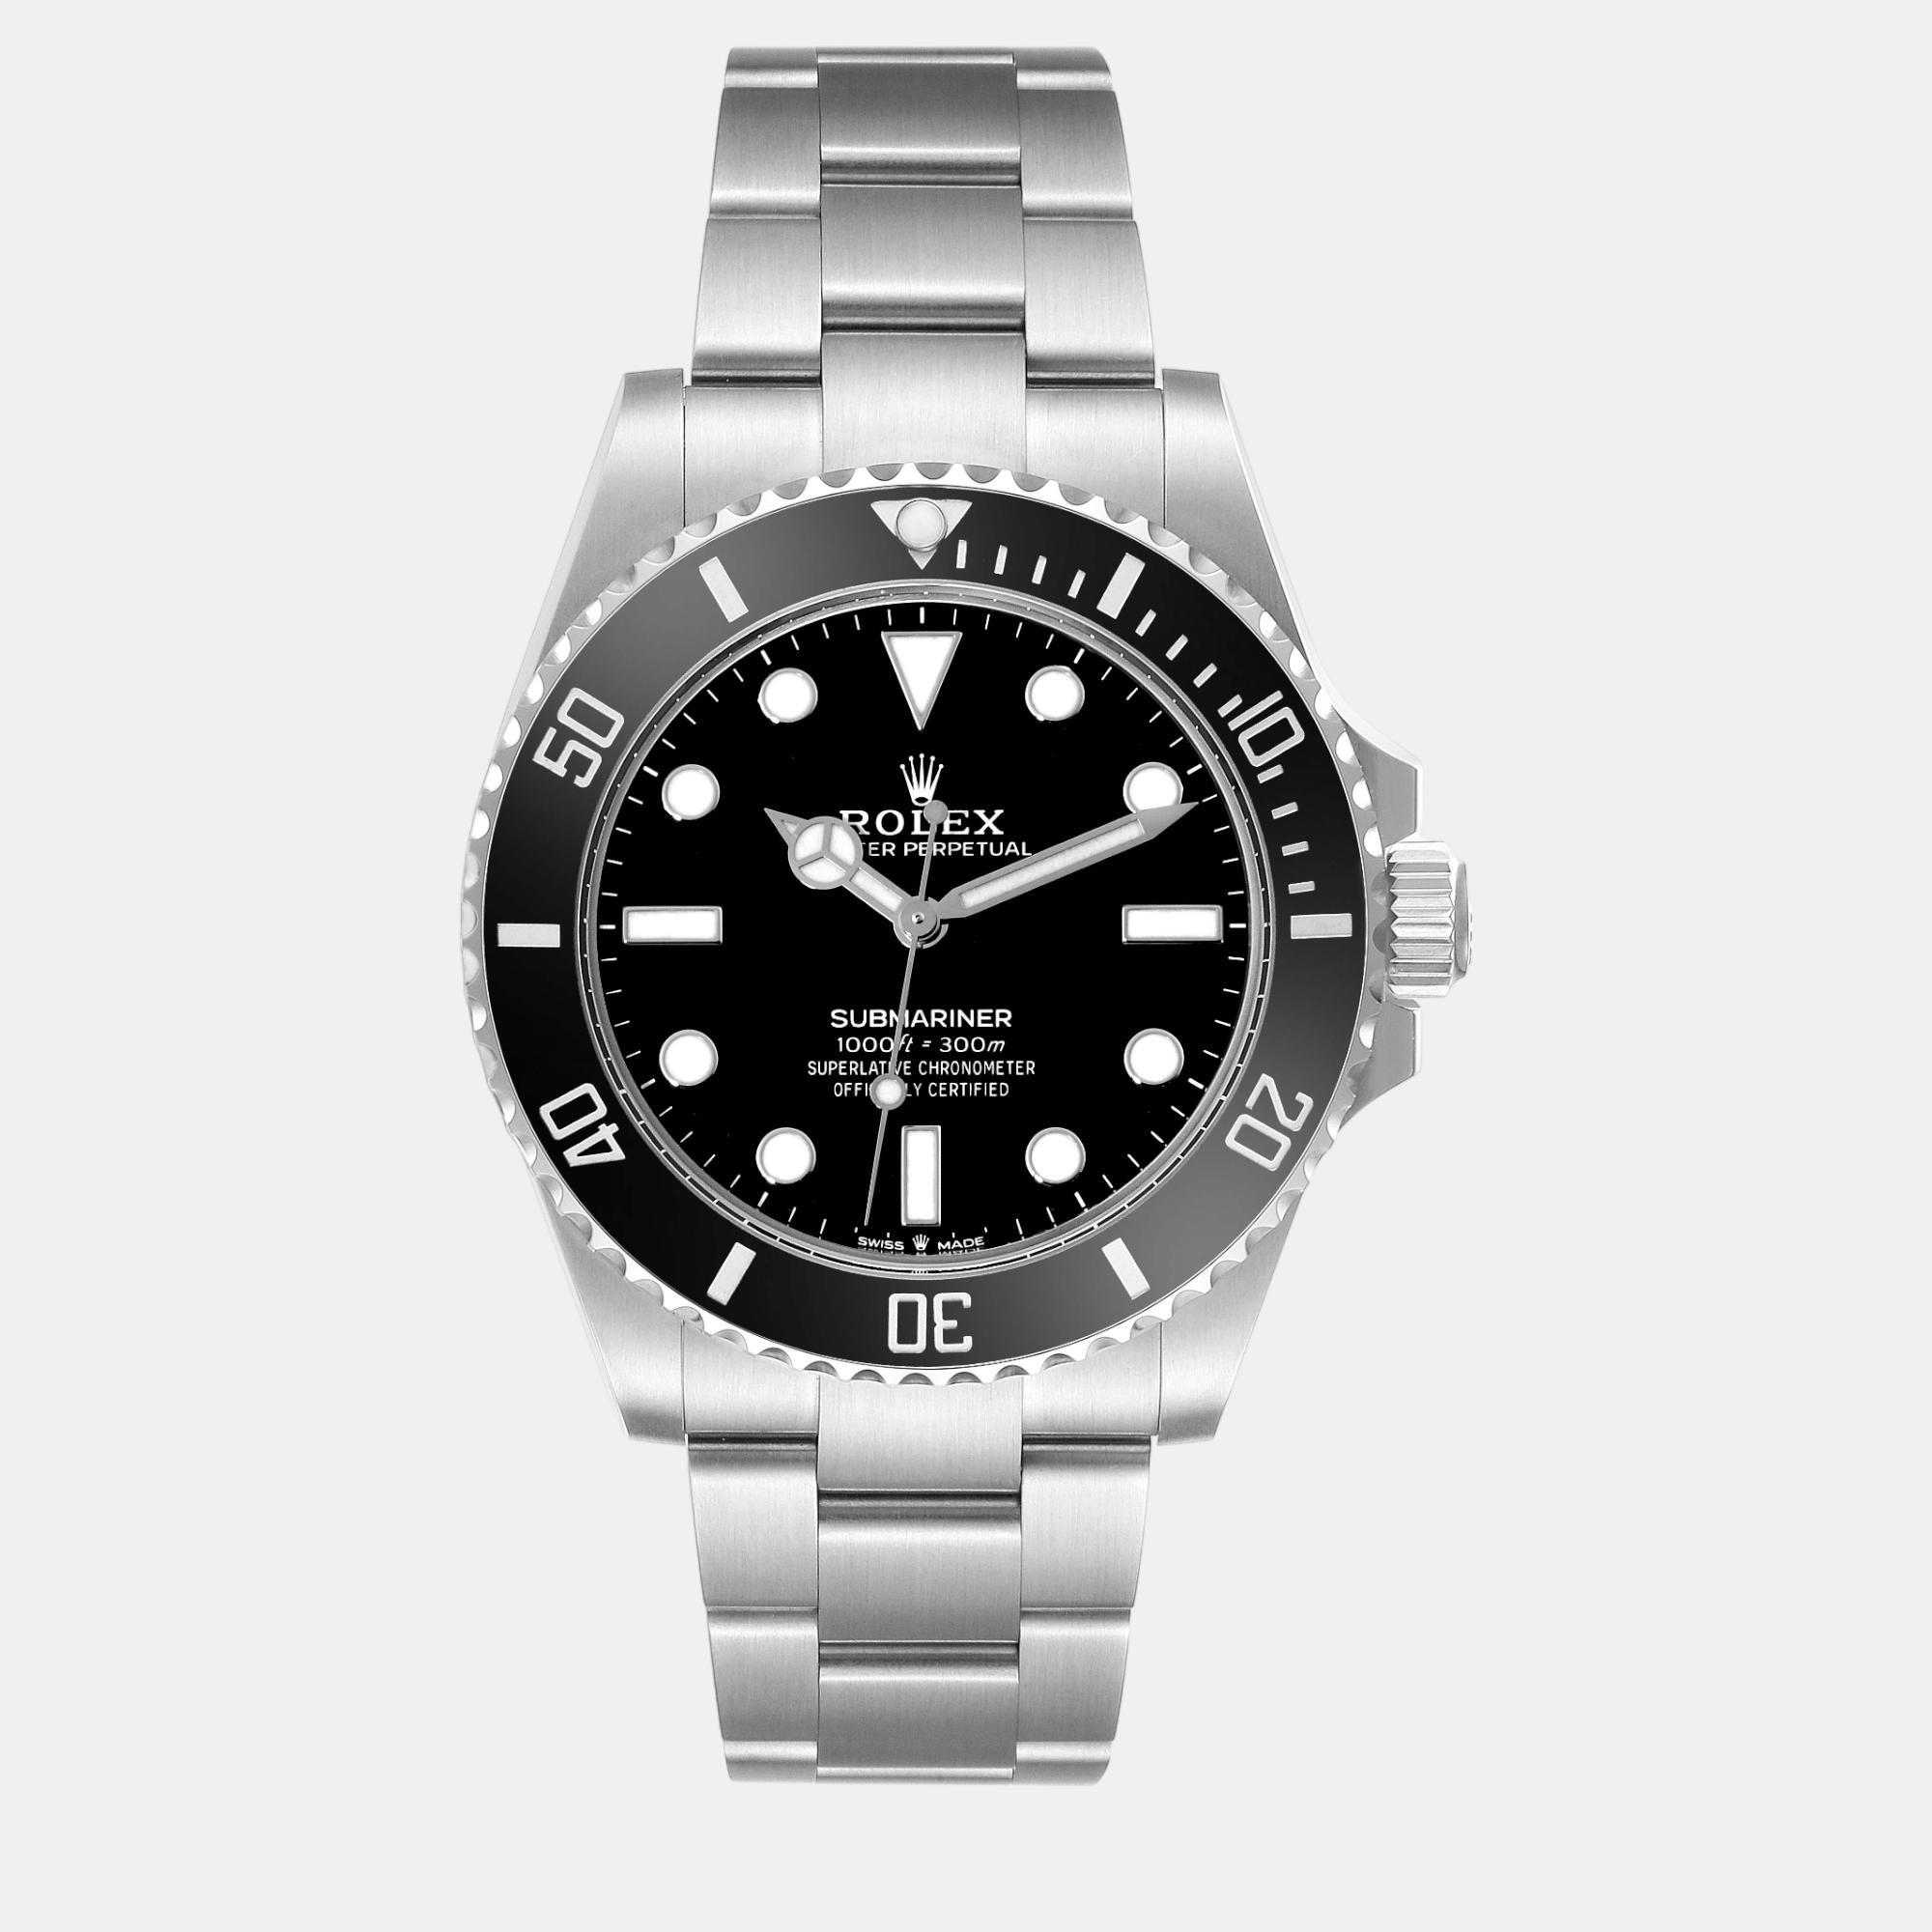 

Rolex Submariner Non-Date Ceramic Bezel Steel Mens Watch, Black